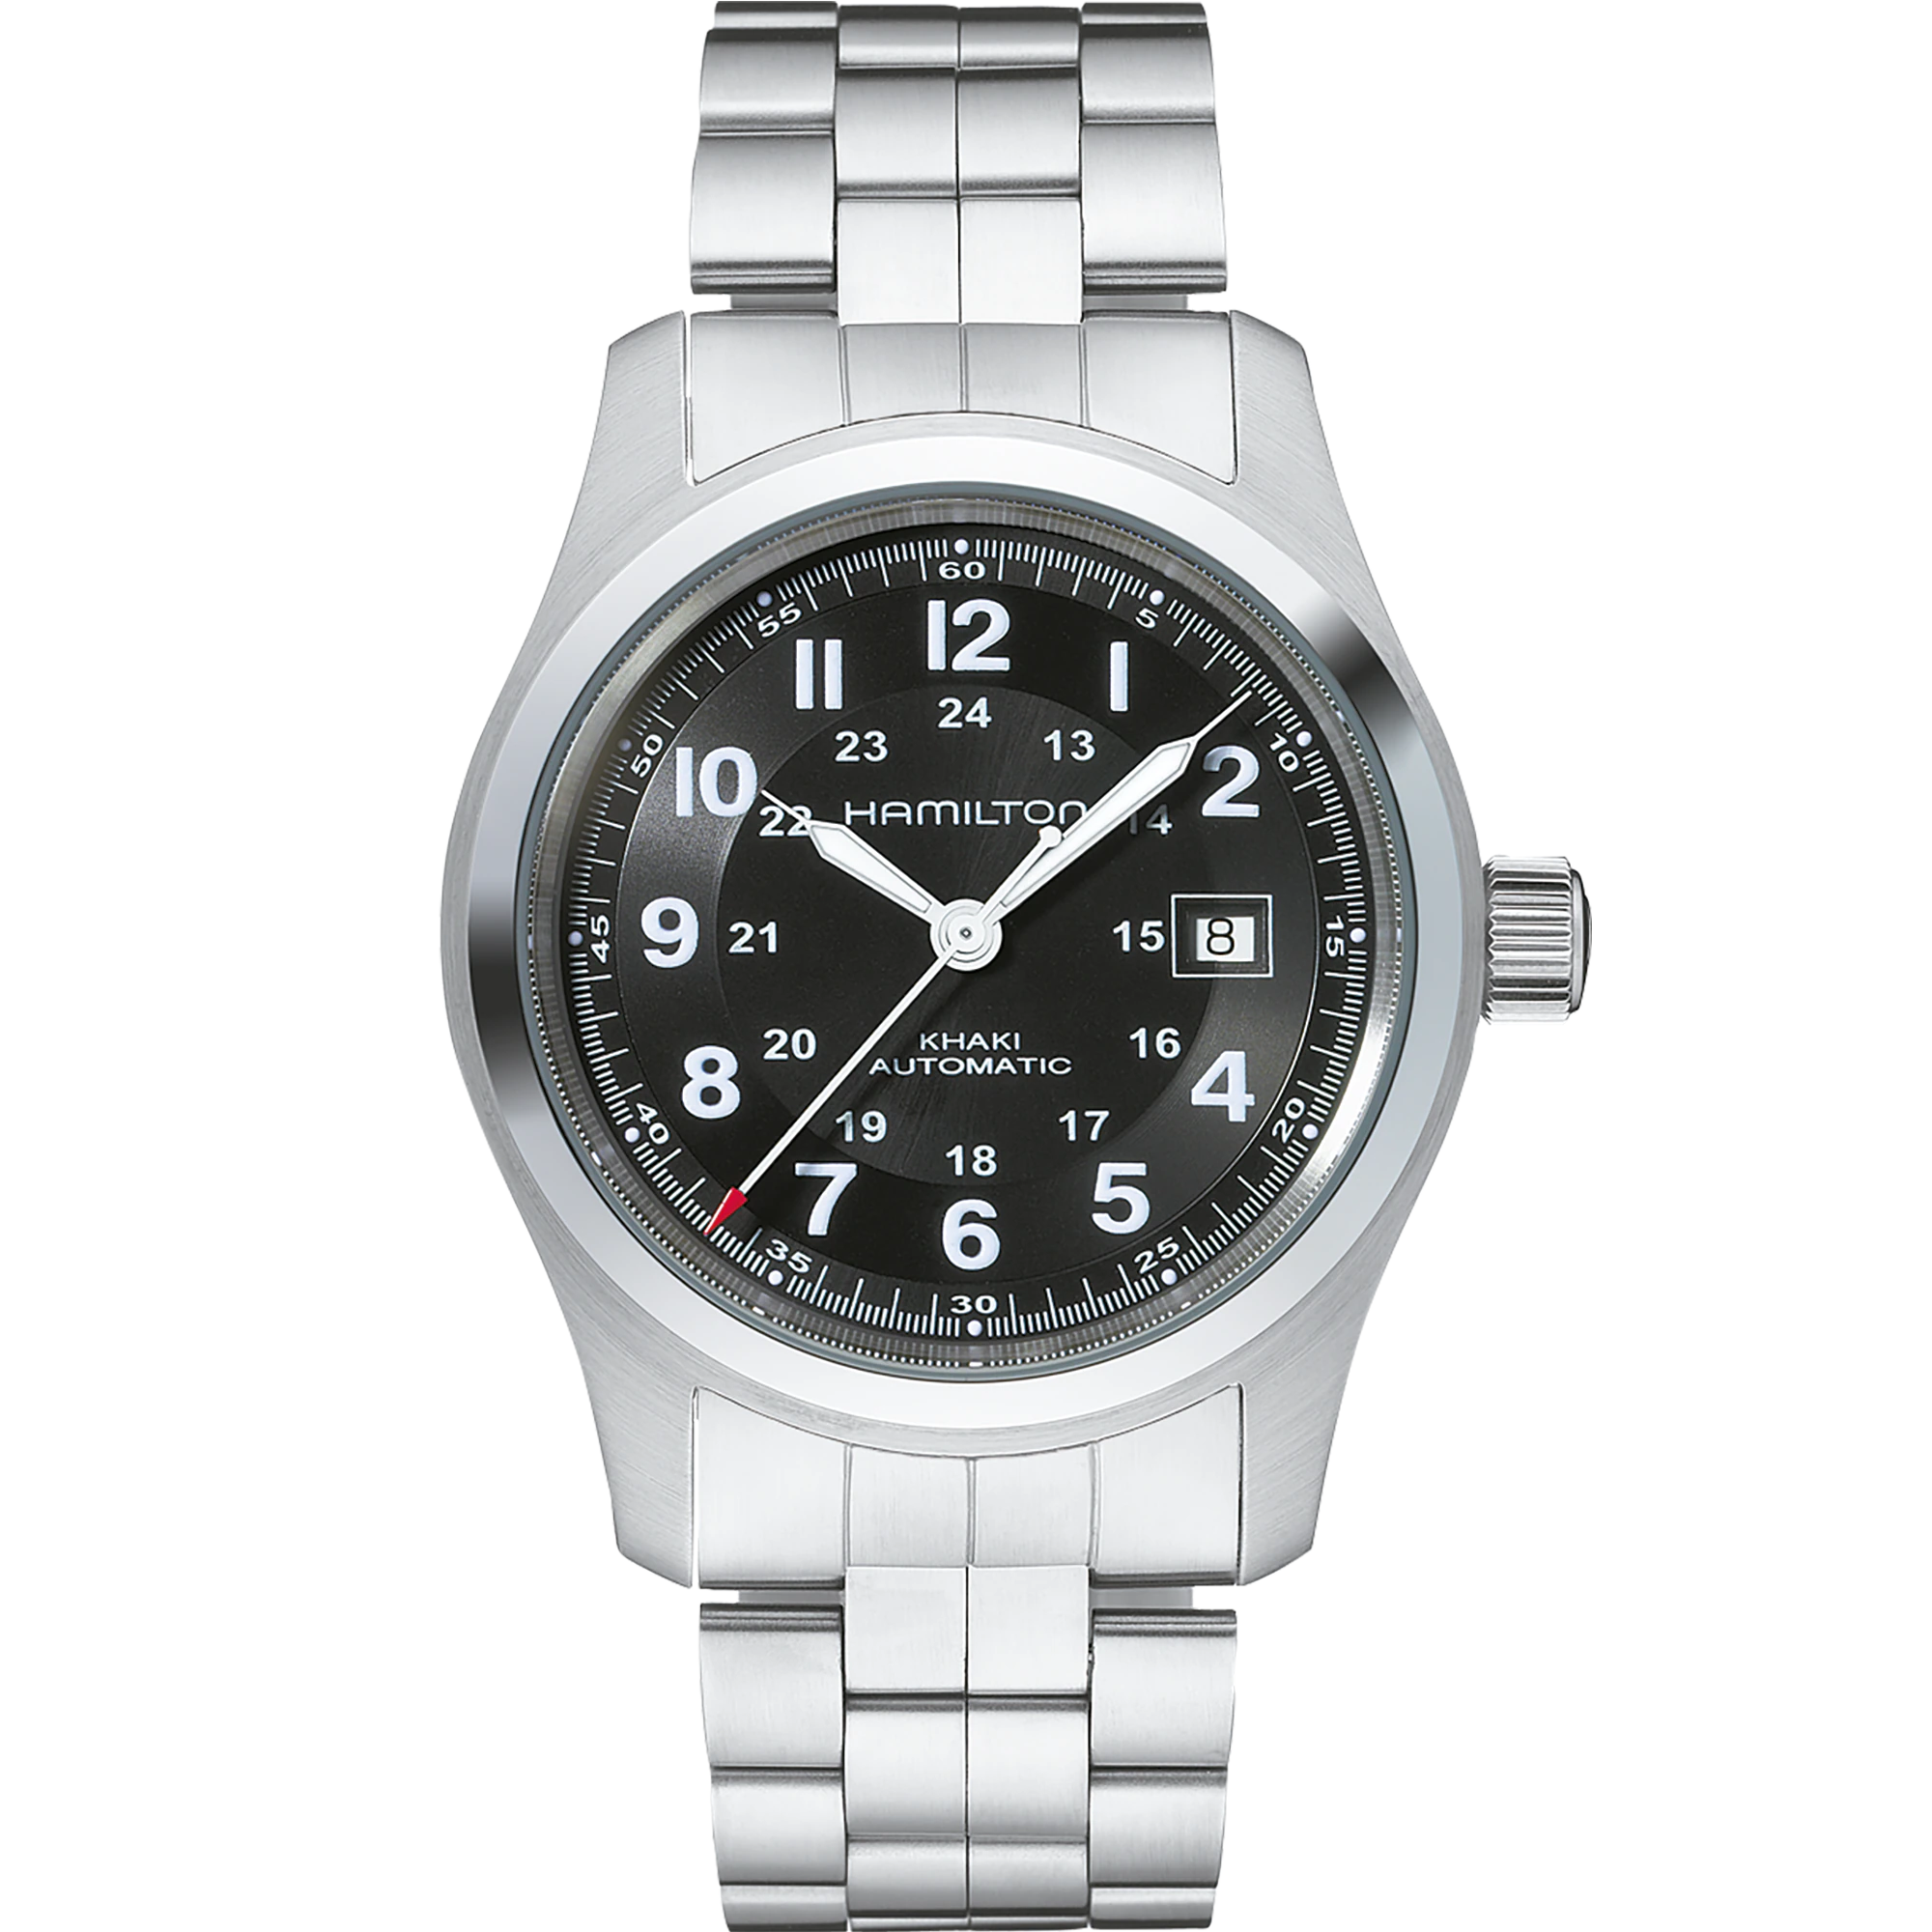 Men's watch / unisex  HAMILTON, Khaki Field Auto / 42mm, SKU: H70515137 | watchphilosophy.co.uk